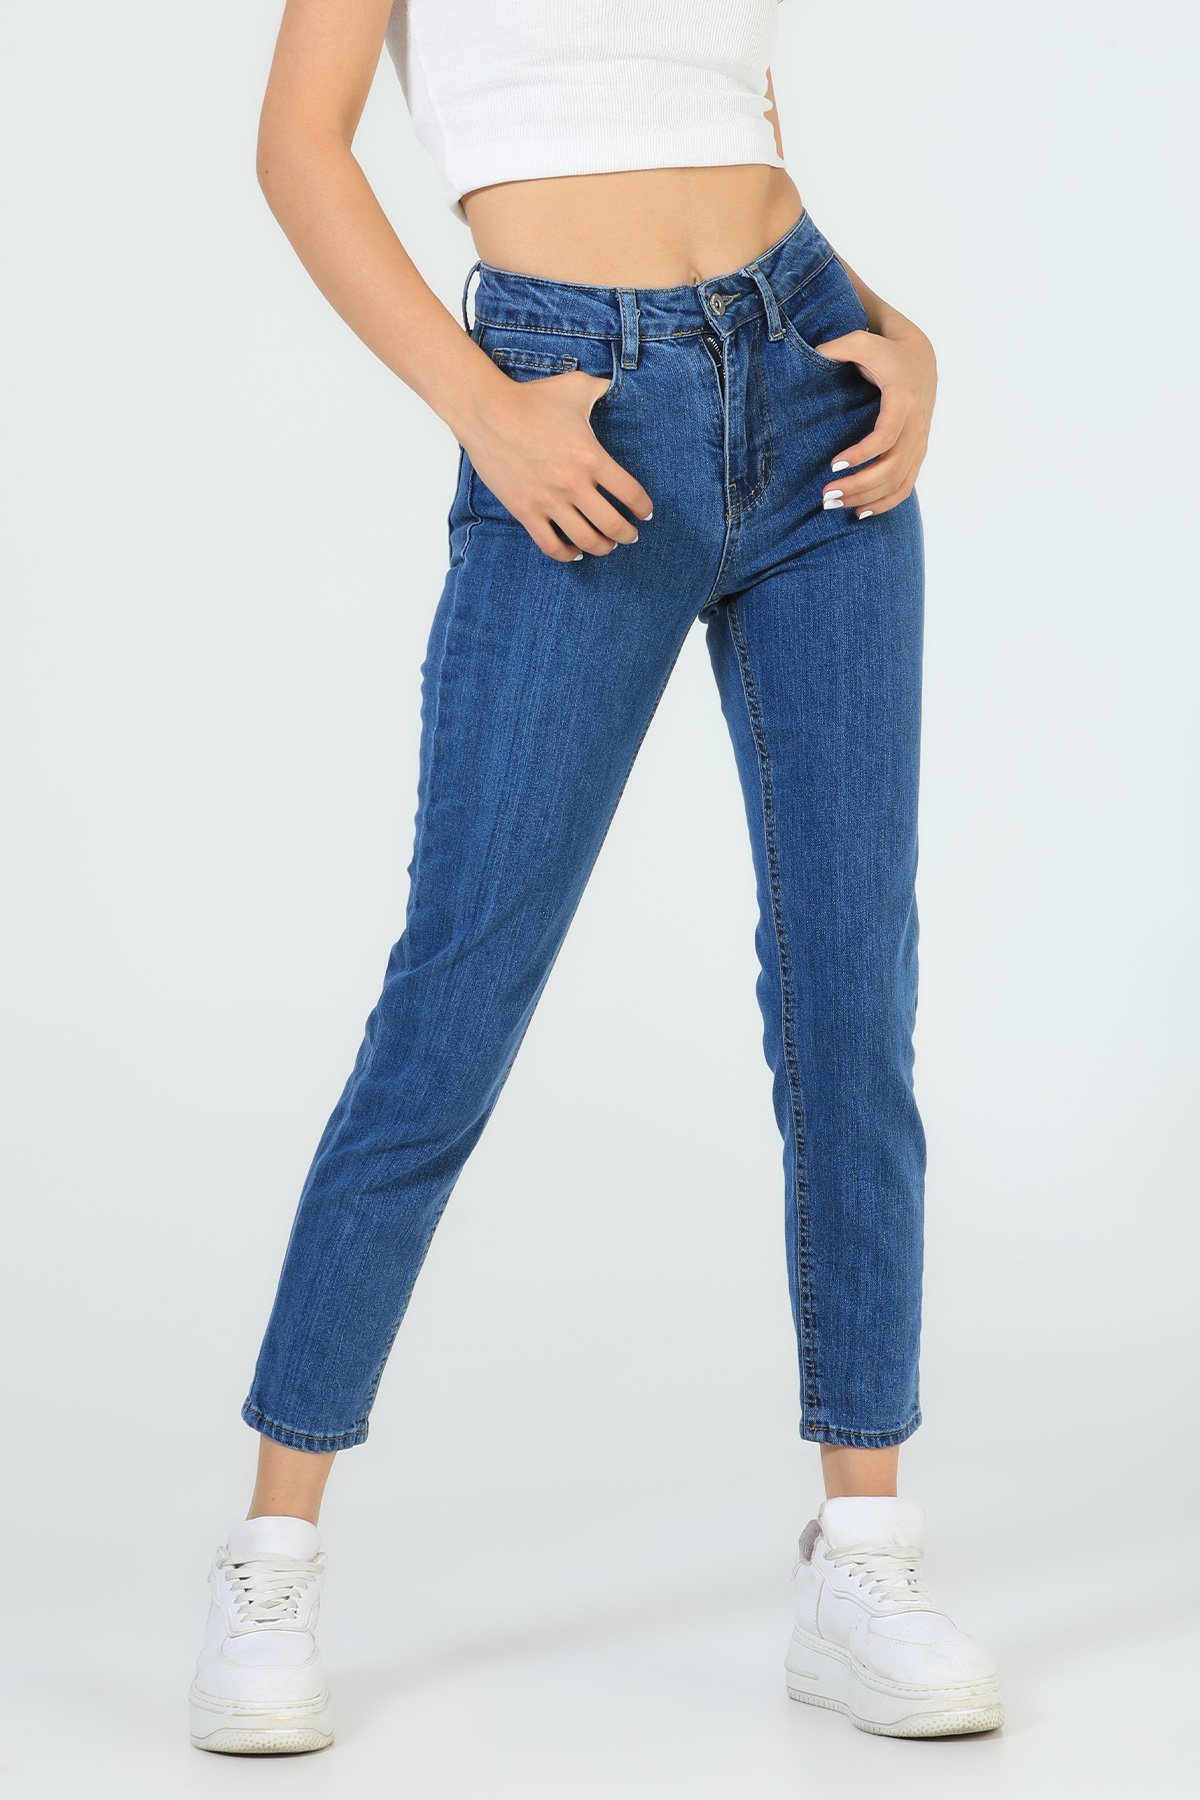 Kadın Yüksek Bel Jeans Pantolon Mavi 504748 - tozlu.com